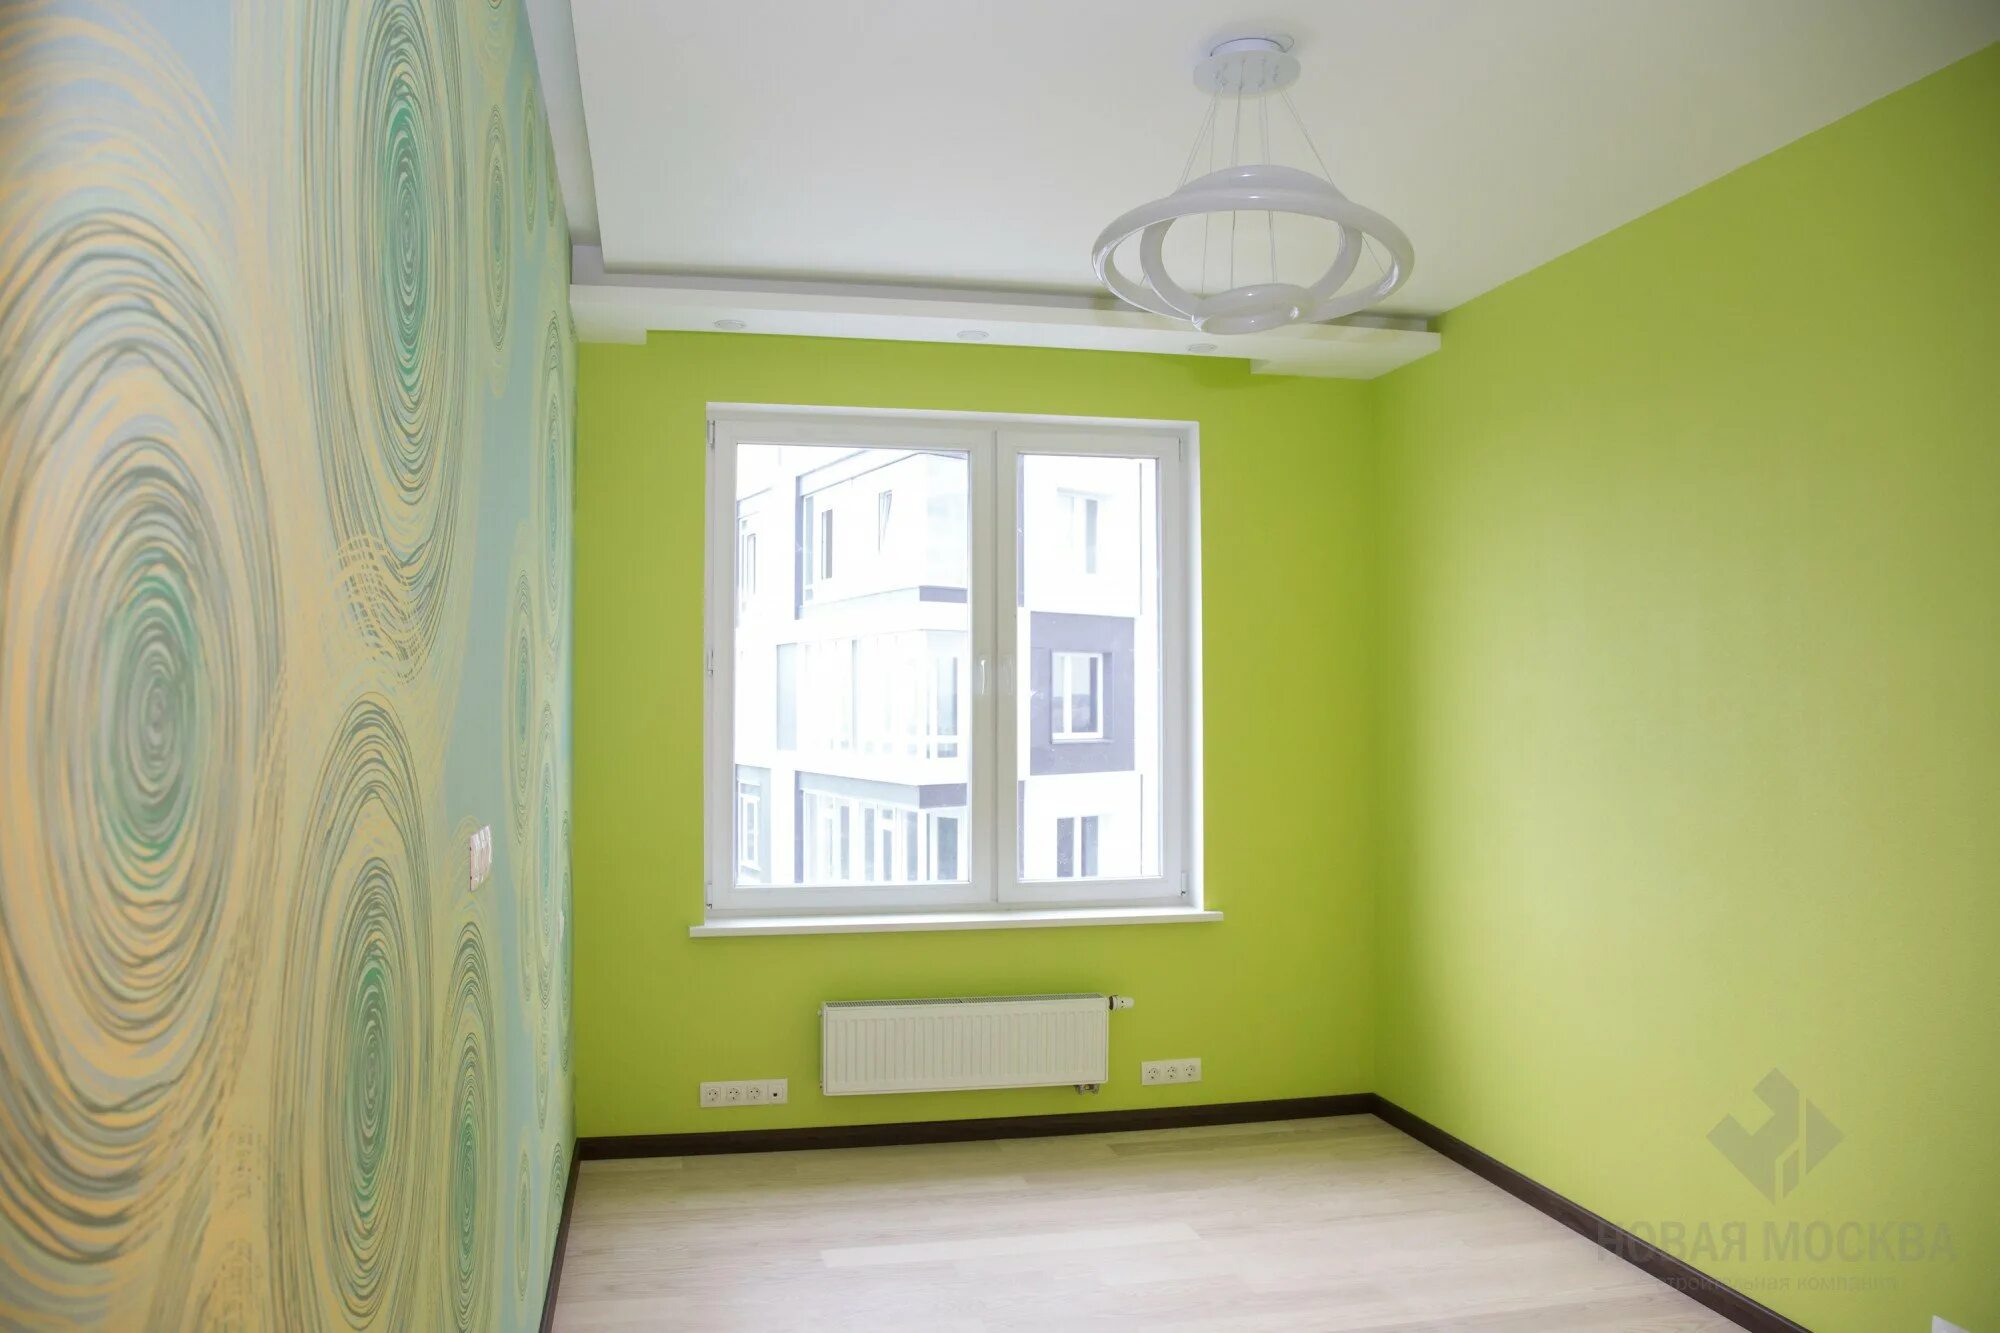 Ремонт покраска обоев. Покраска стен в квартире. Покрашенные стены. Краска для стен в квартире. Окрашивание стен в квартире.